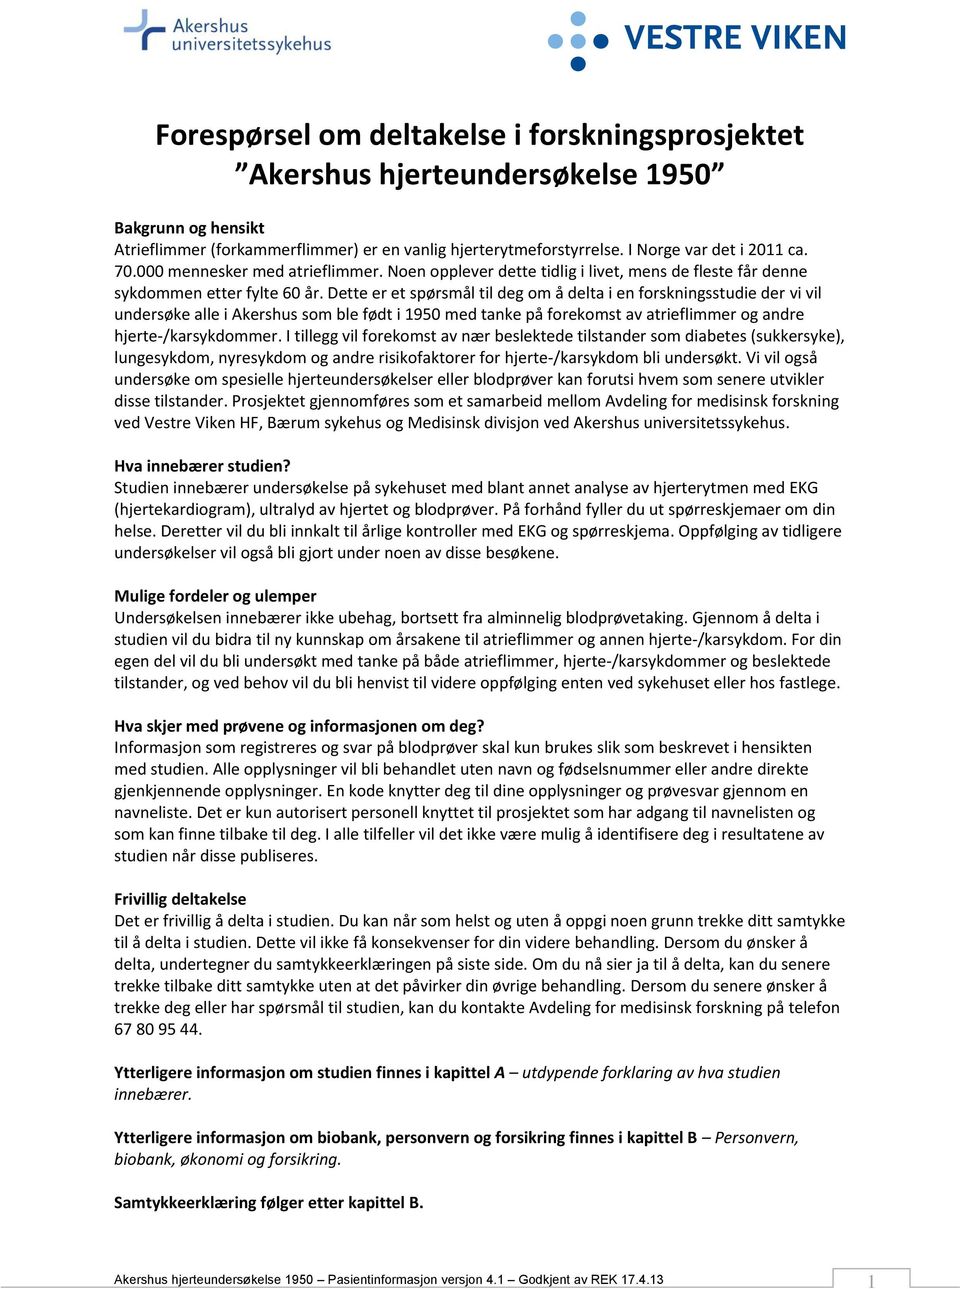 Dette er et spørsmål til deg om å delta i en forskningsstudie der vi vil undersøke alle i Akershus som ble født i 1950 med tanke på forekomst av atrieflimmer og andre hjerte-/karsykdommer.